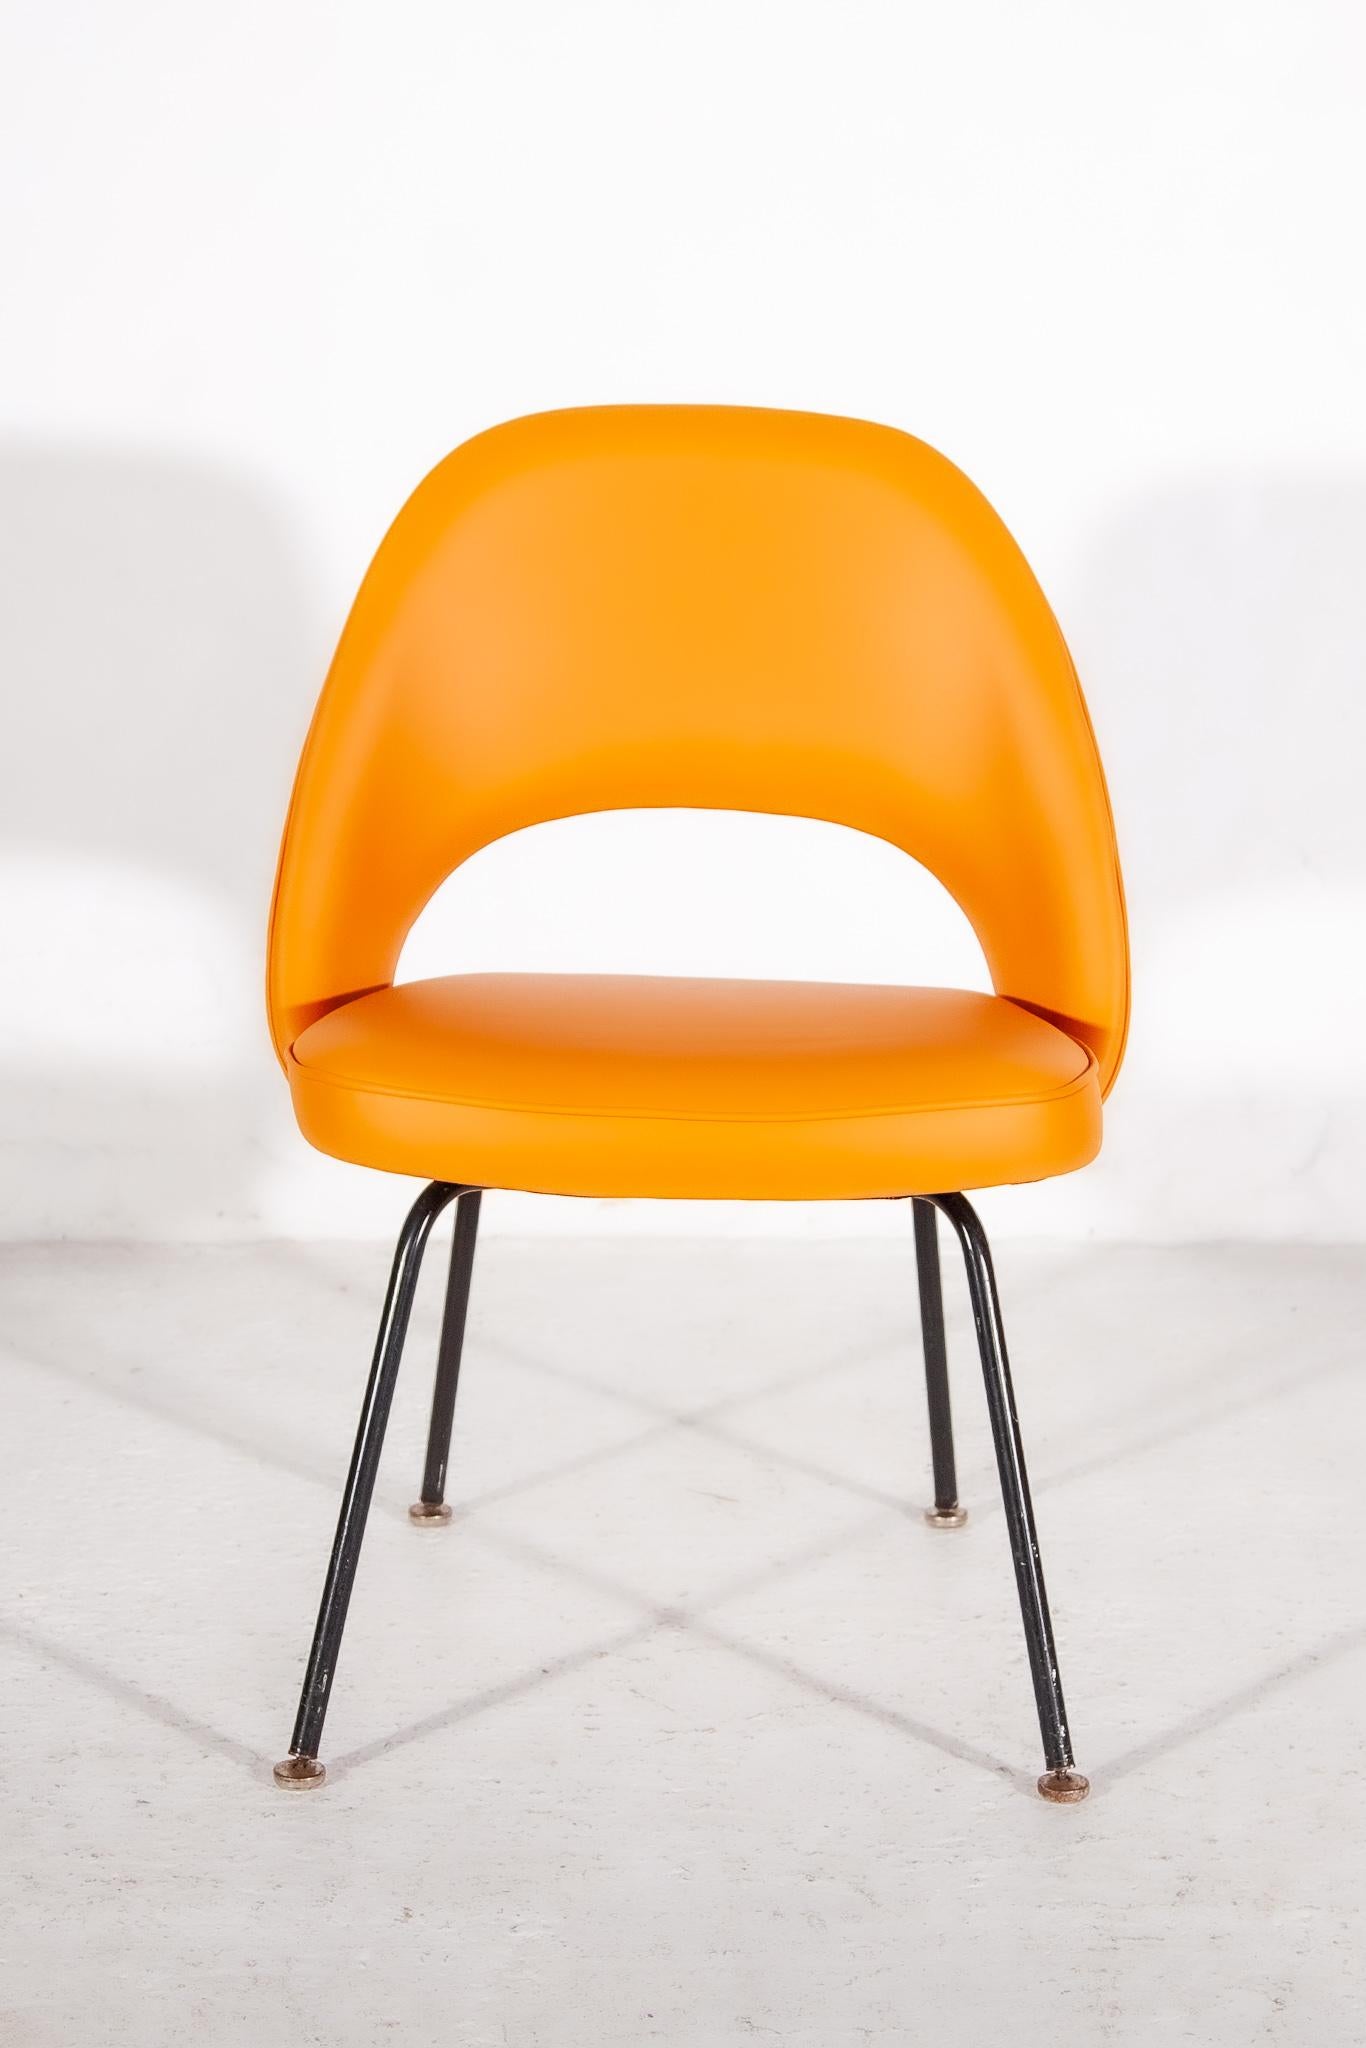 Satz von vier armlosen Chefsesseln von Eero Saarinen für Knoll International. Stühle haben ein Label auf der Unterseite KNOLL International.

Erleben Sie einen der Grundpfeiler des modernen Möbeldesigns mit dem Saarinen Executive Chair mit